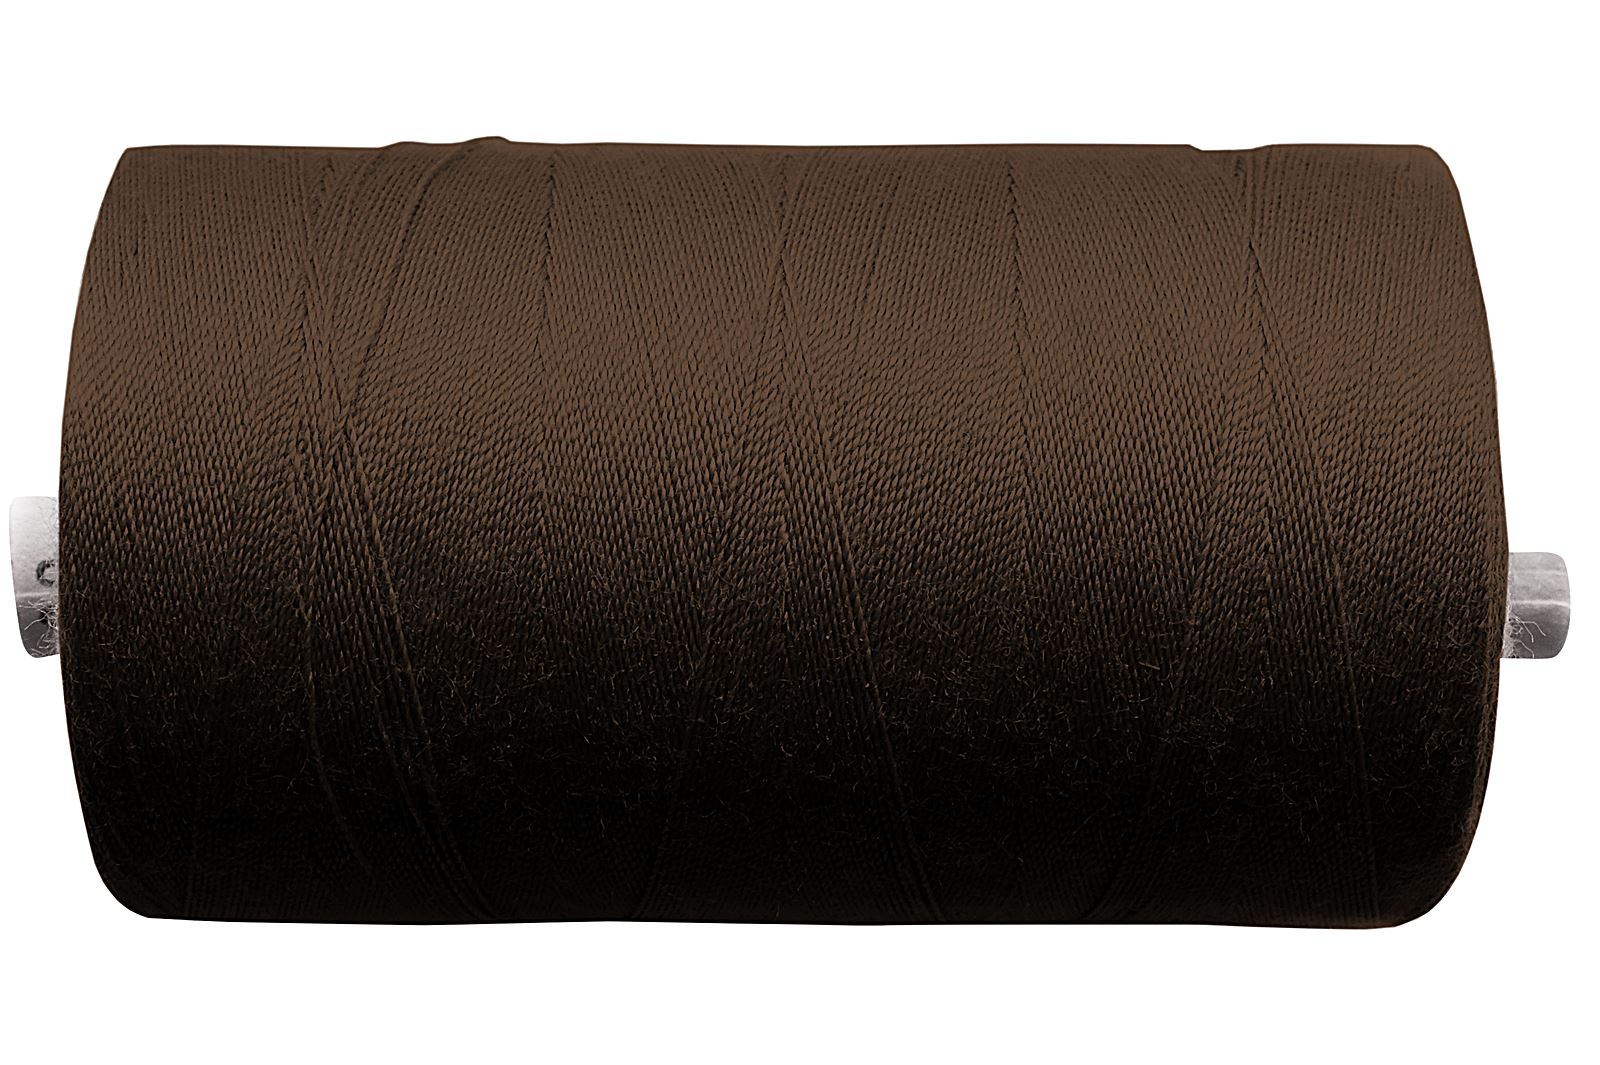 Hilo de coser – Calidad industrial 100 - Medio marrón